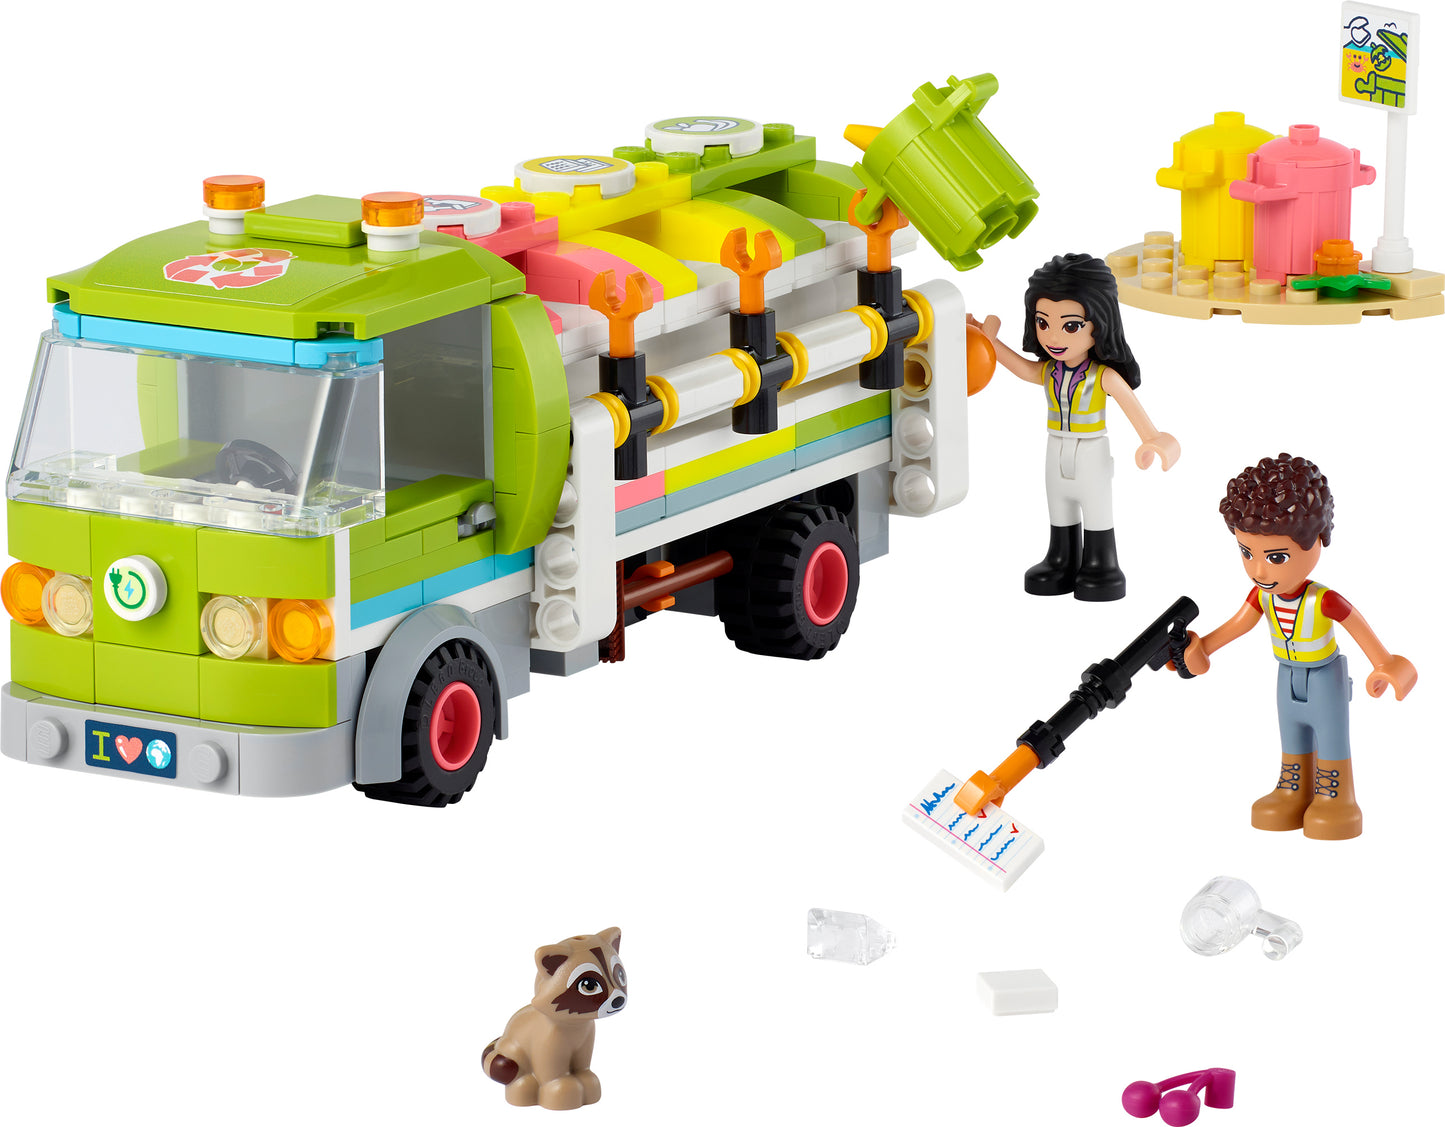 41712 LEGO Friends - Camion riciclaggio rifiuti